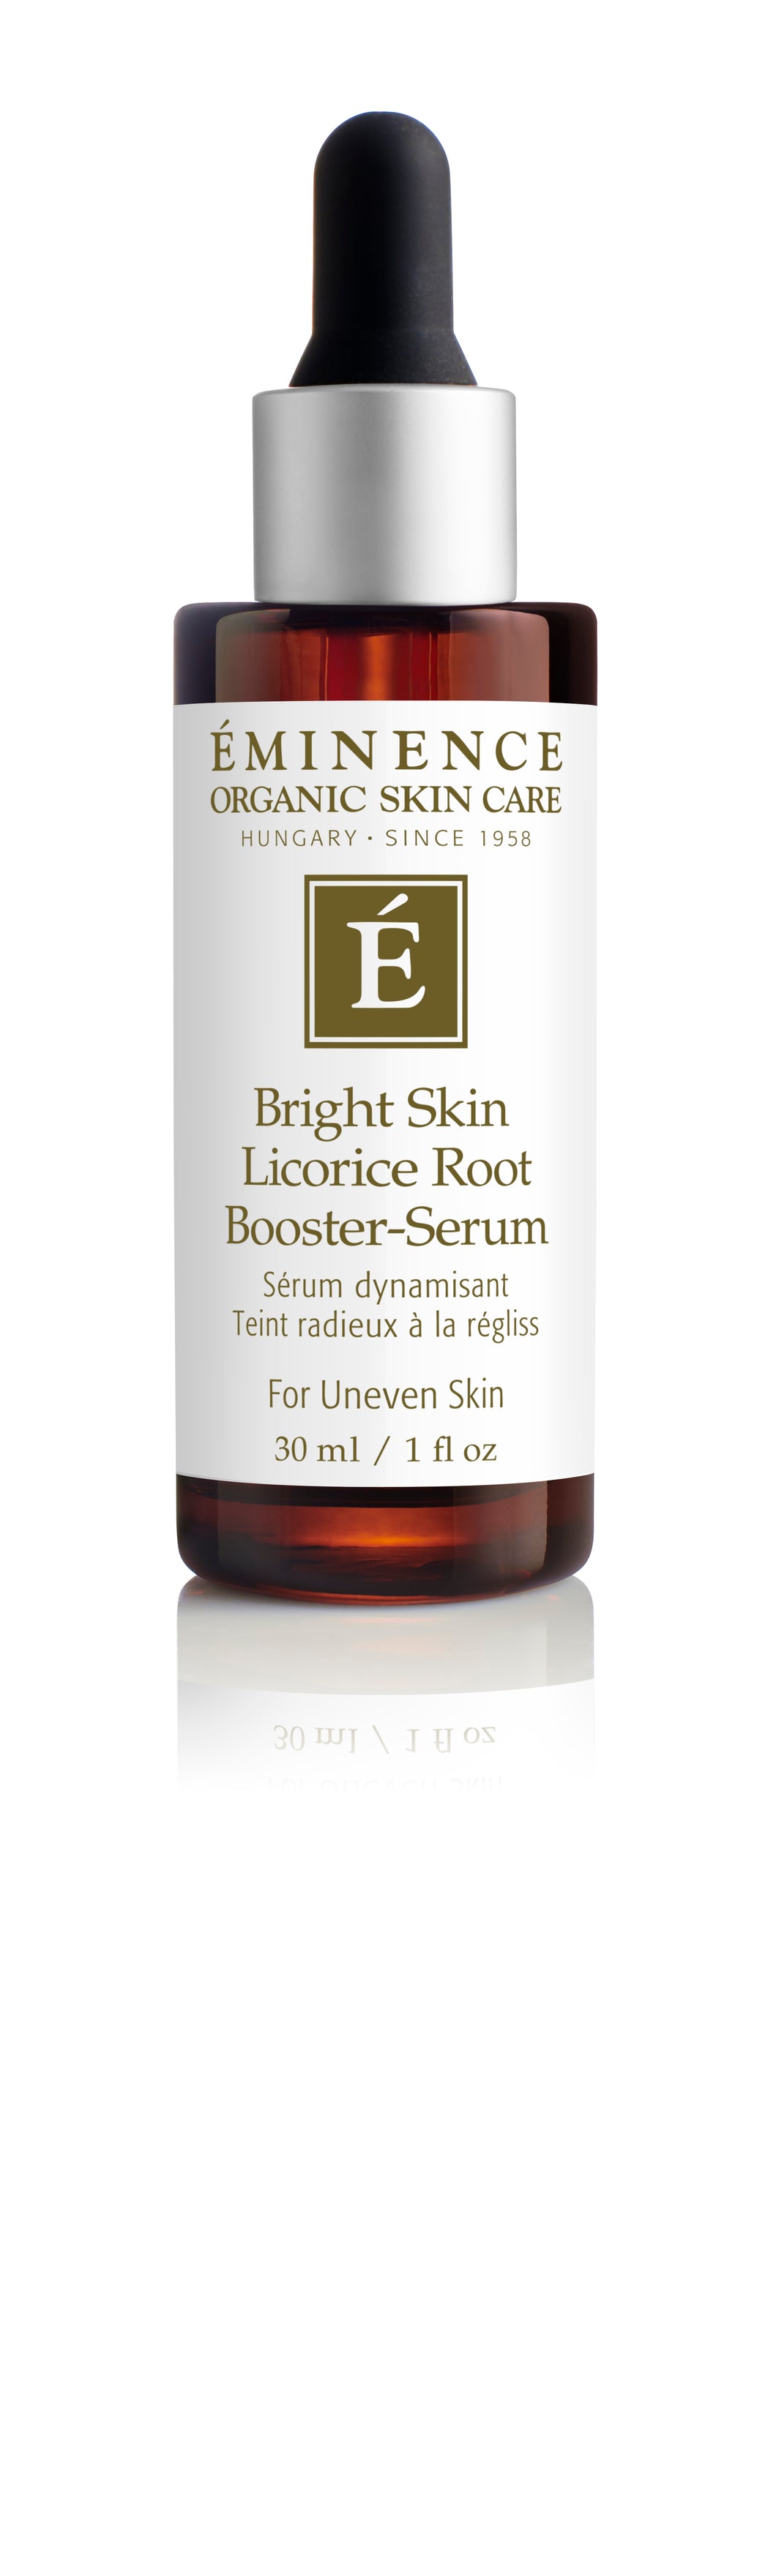 Bright Skin Licorice Root Booster Serum